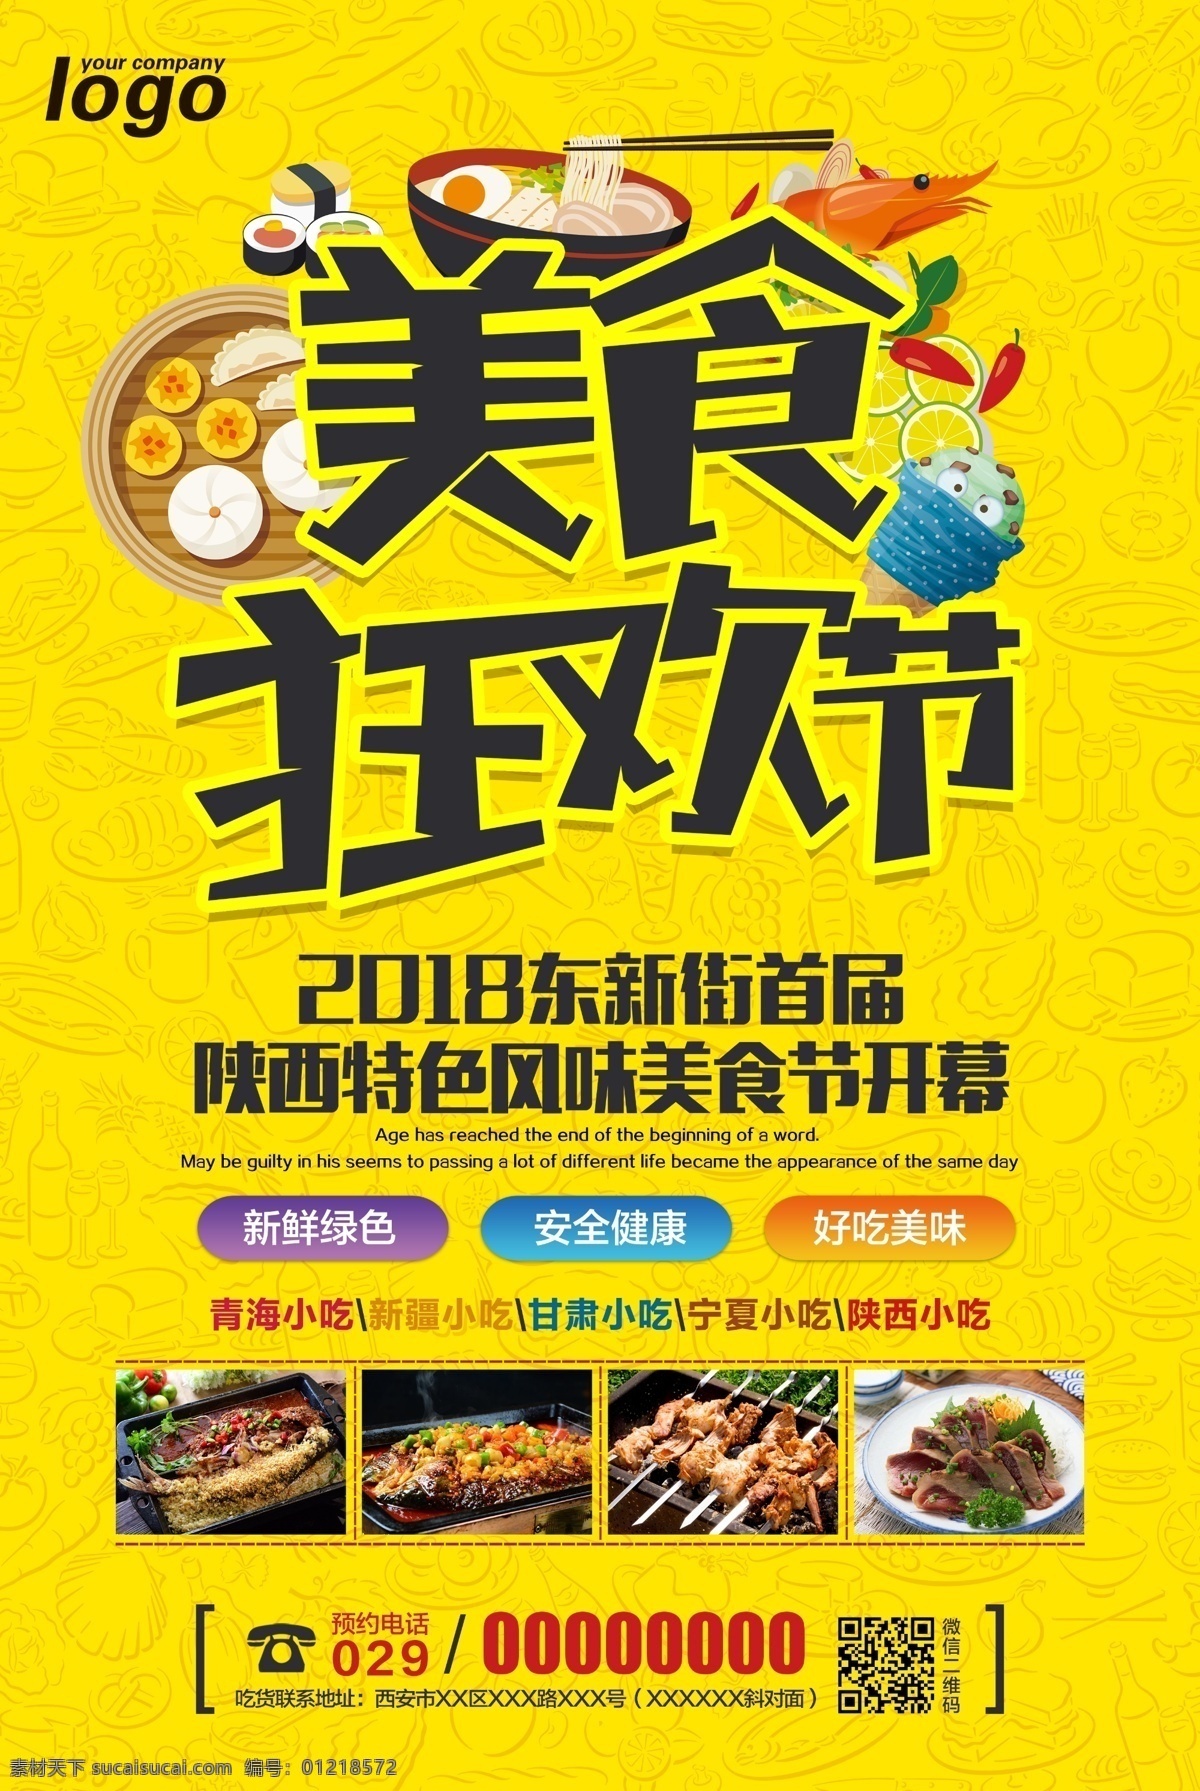 美食节 美食狂欢节 食物海报 食物创意海报 特色美食 台湾美食 小吃 中国特色美食 美食文化节 陕西特色美食 字体设计 韩国美食